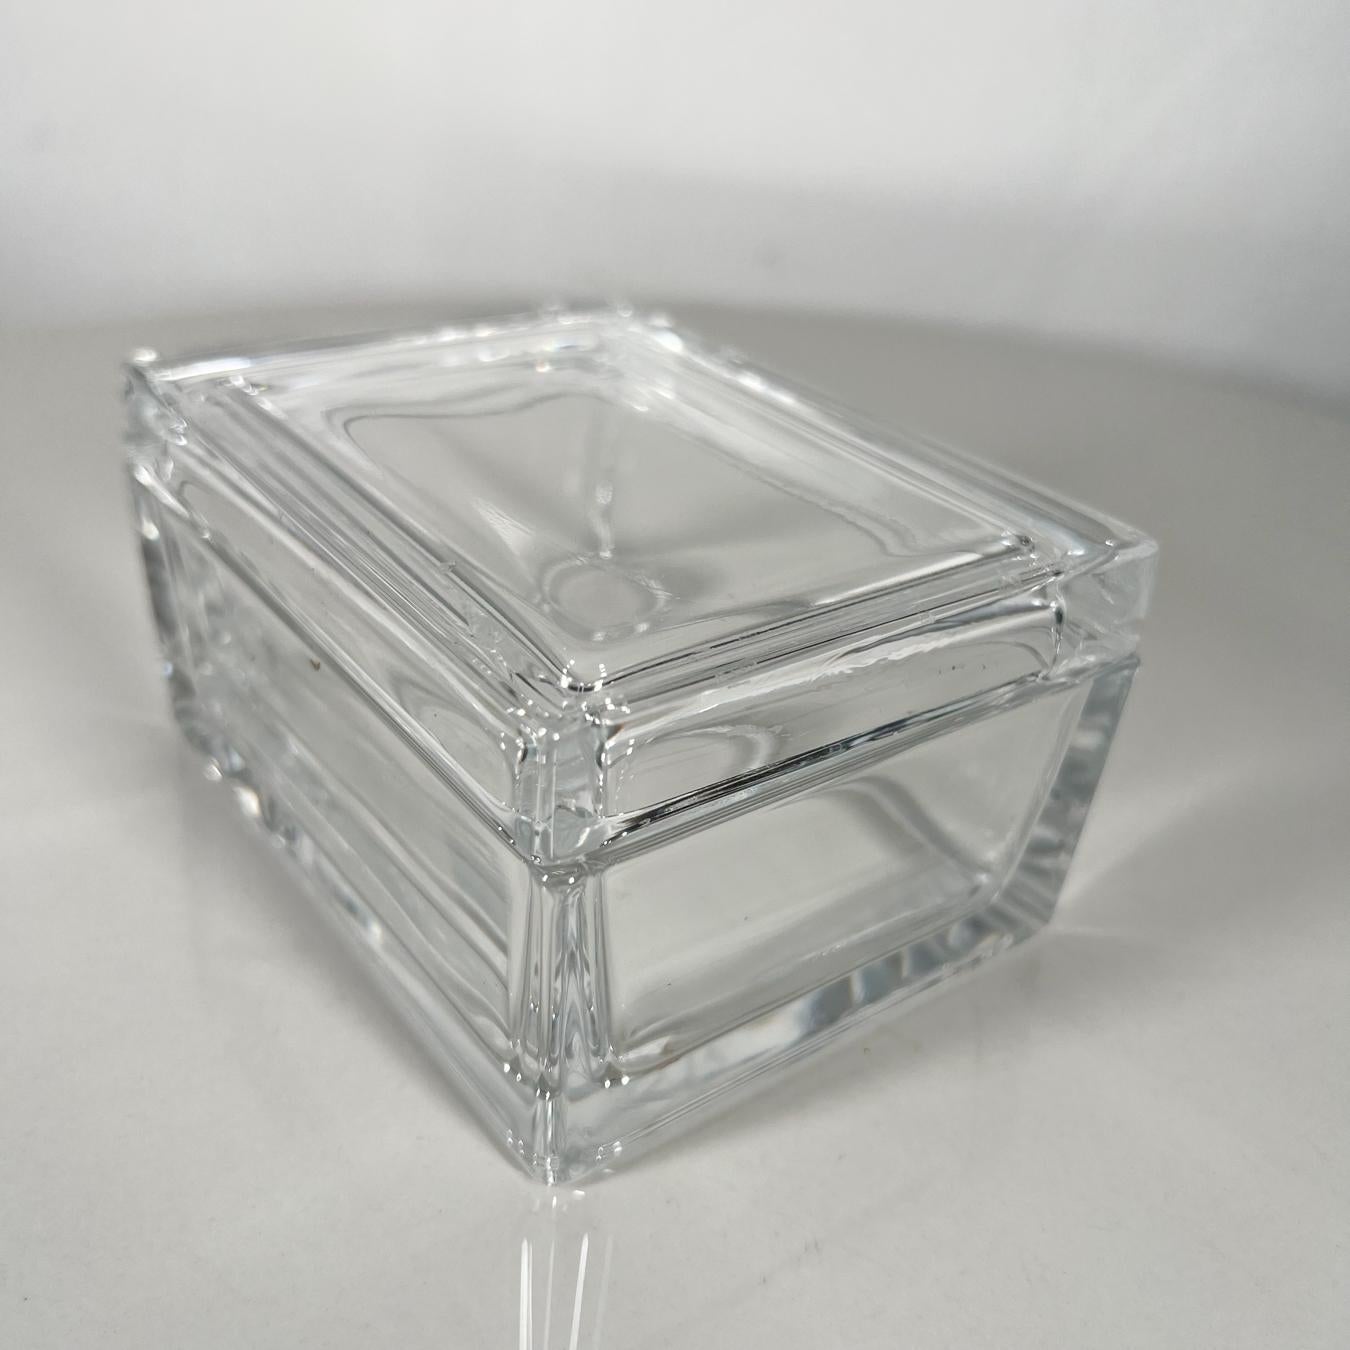 Merrill Lynch Glass Trinket Box 1